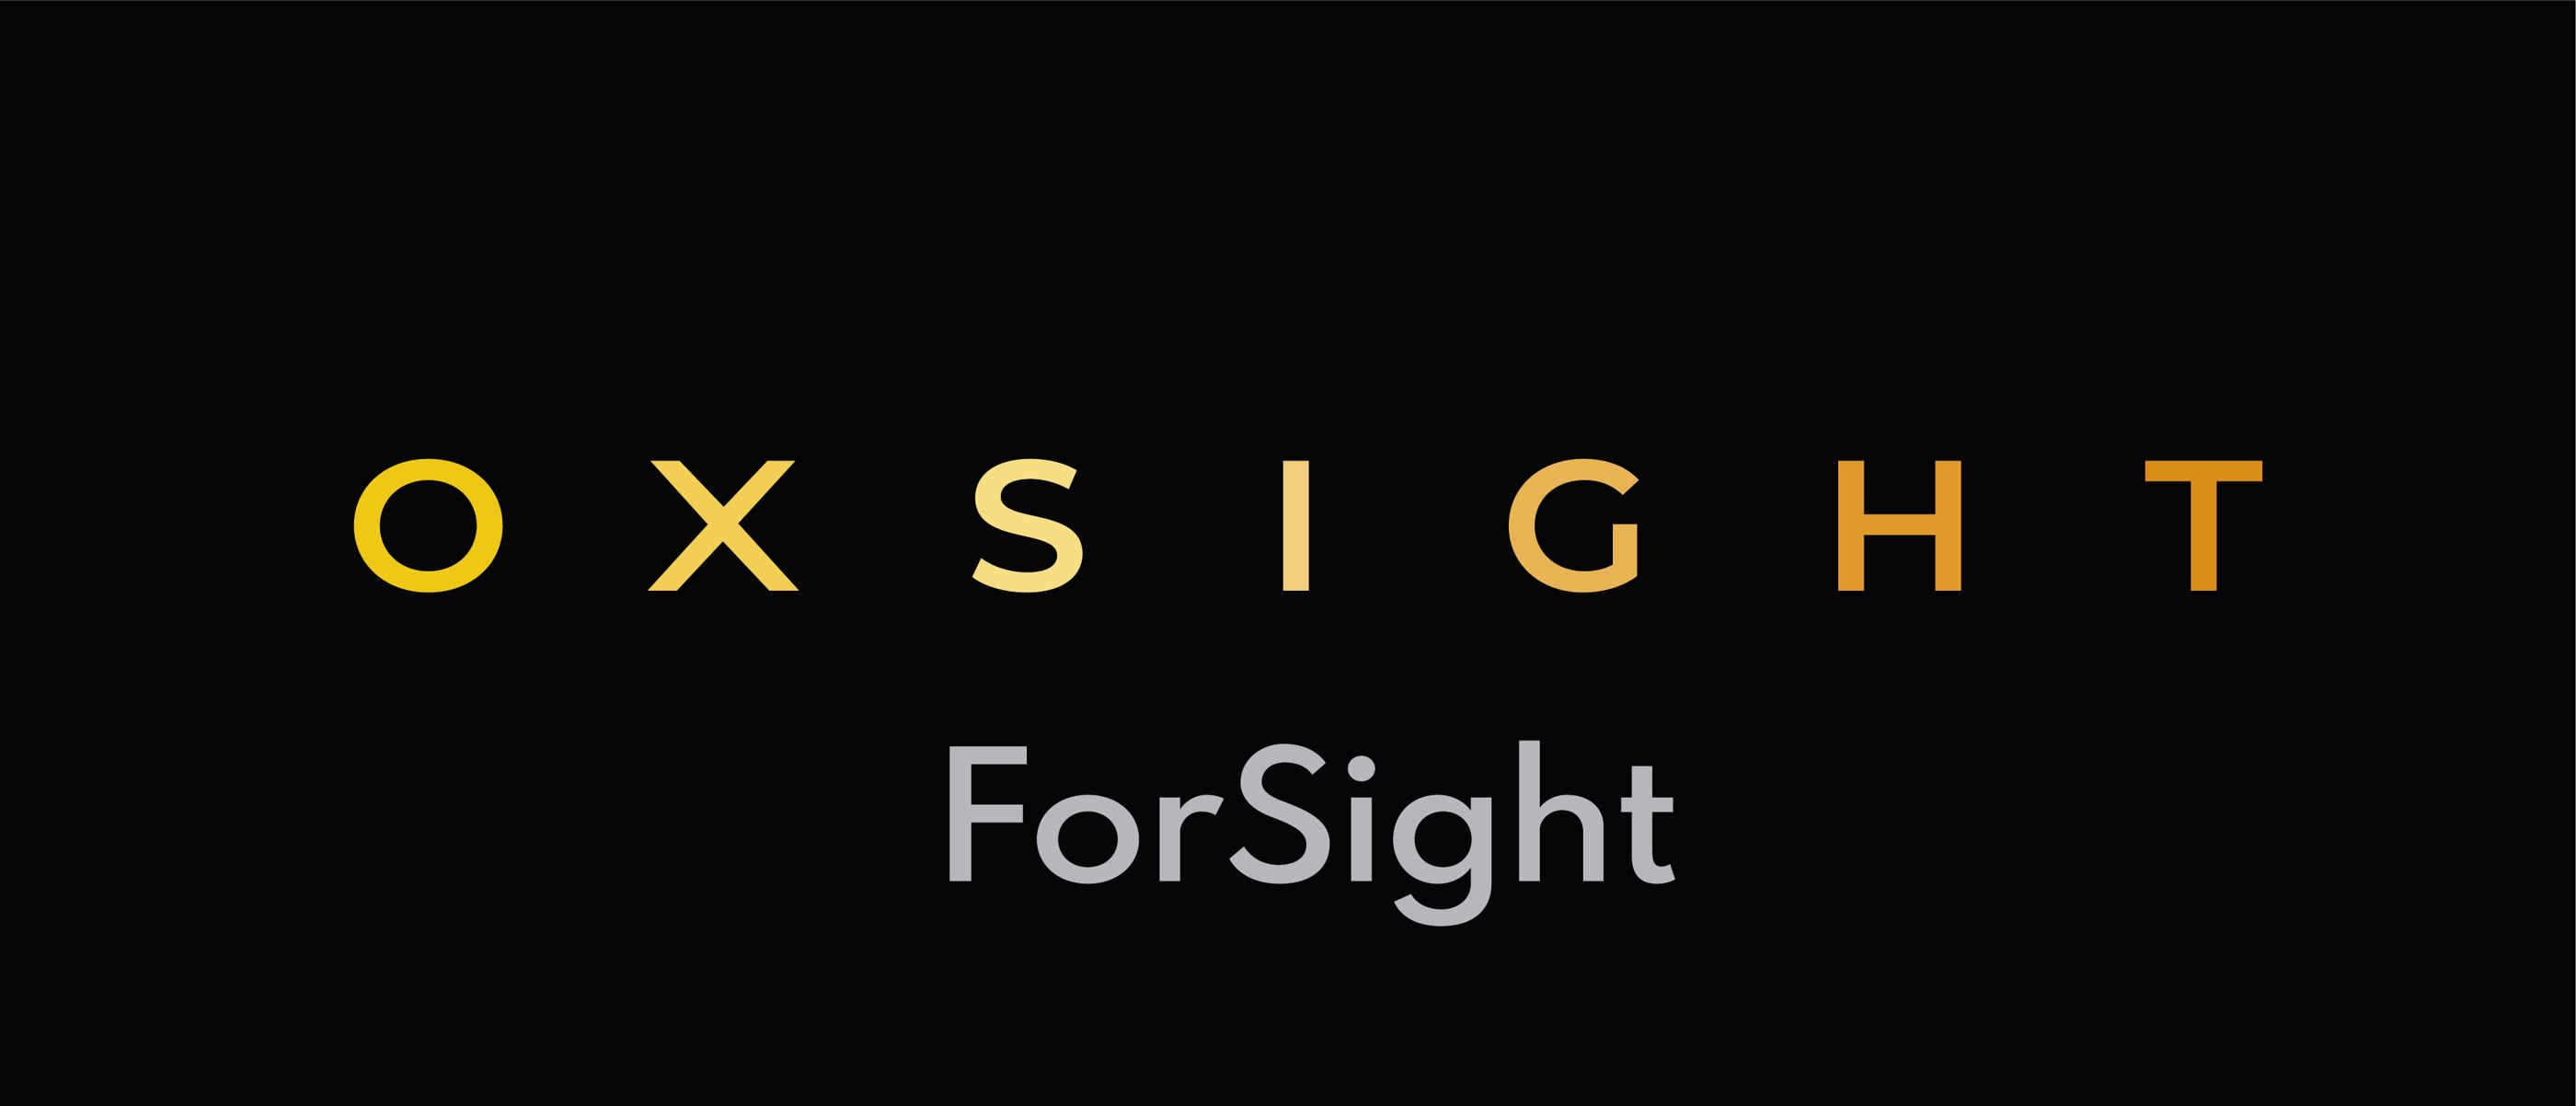 OXSIGHT ForSight logo.jpg